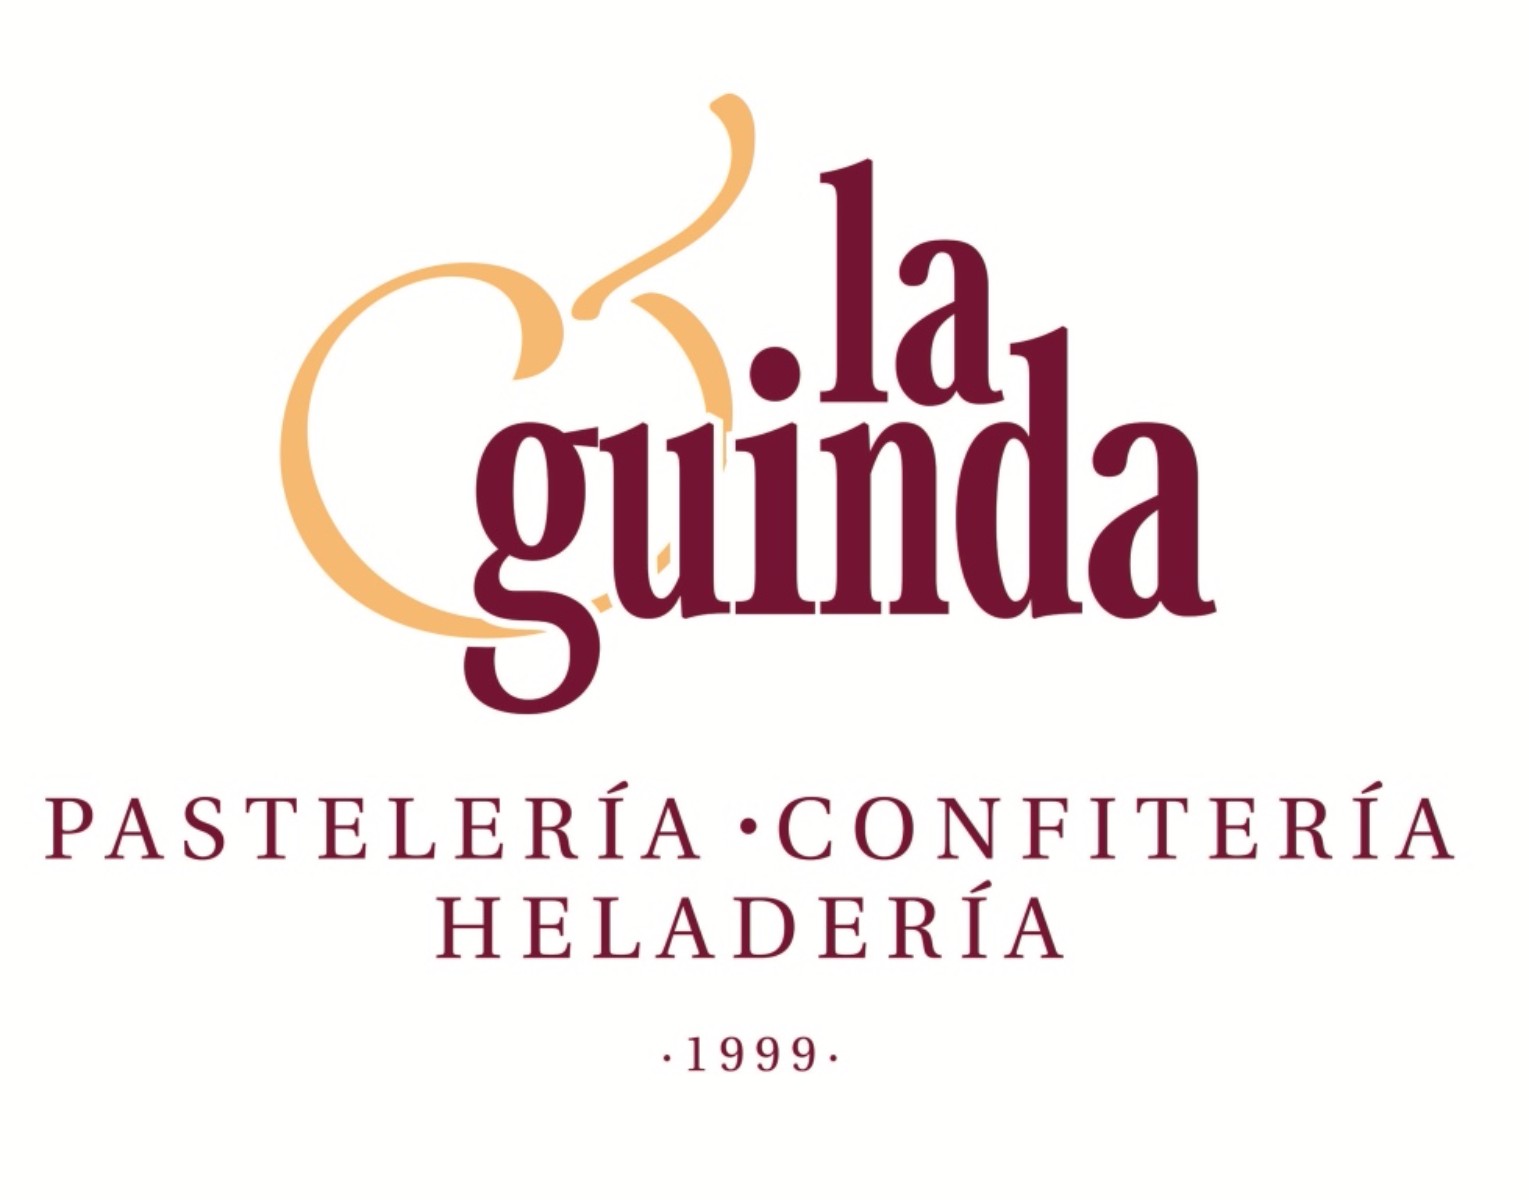 Pasteleria La Guinda